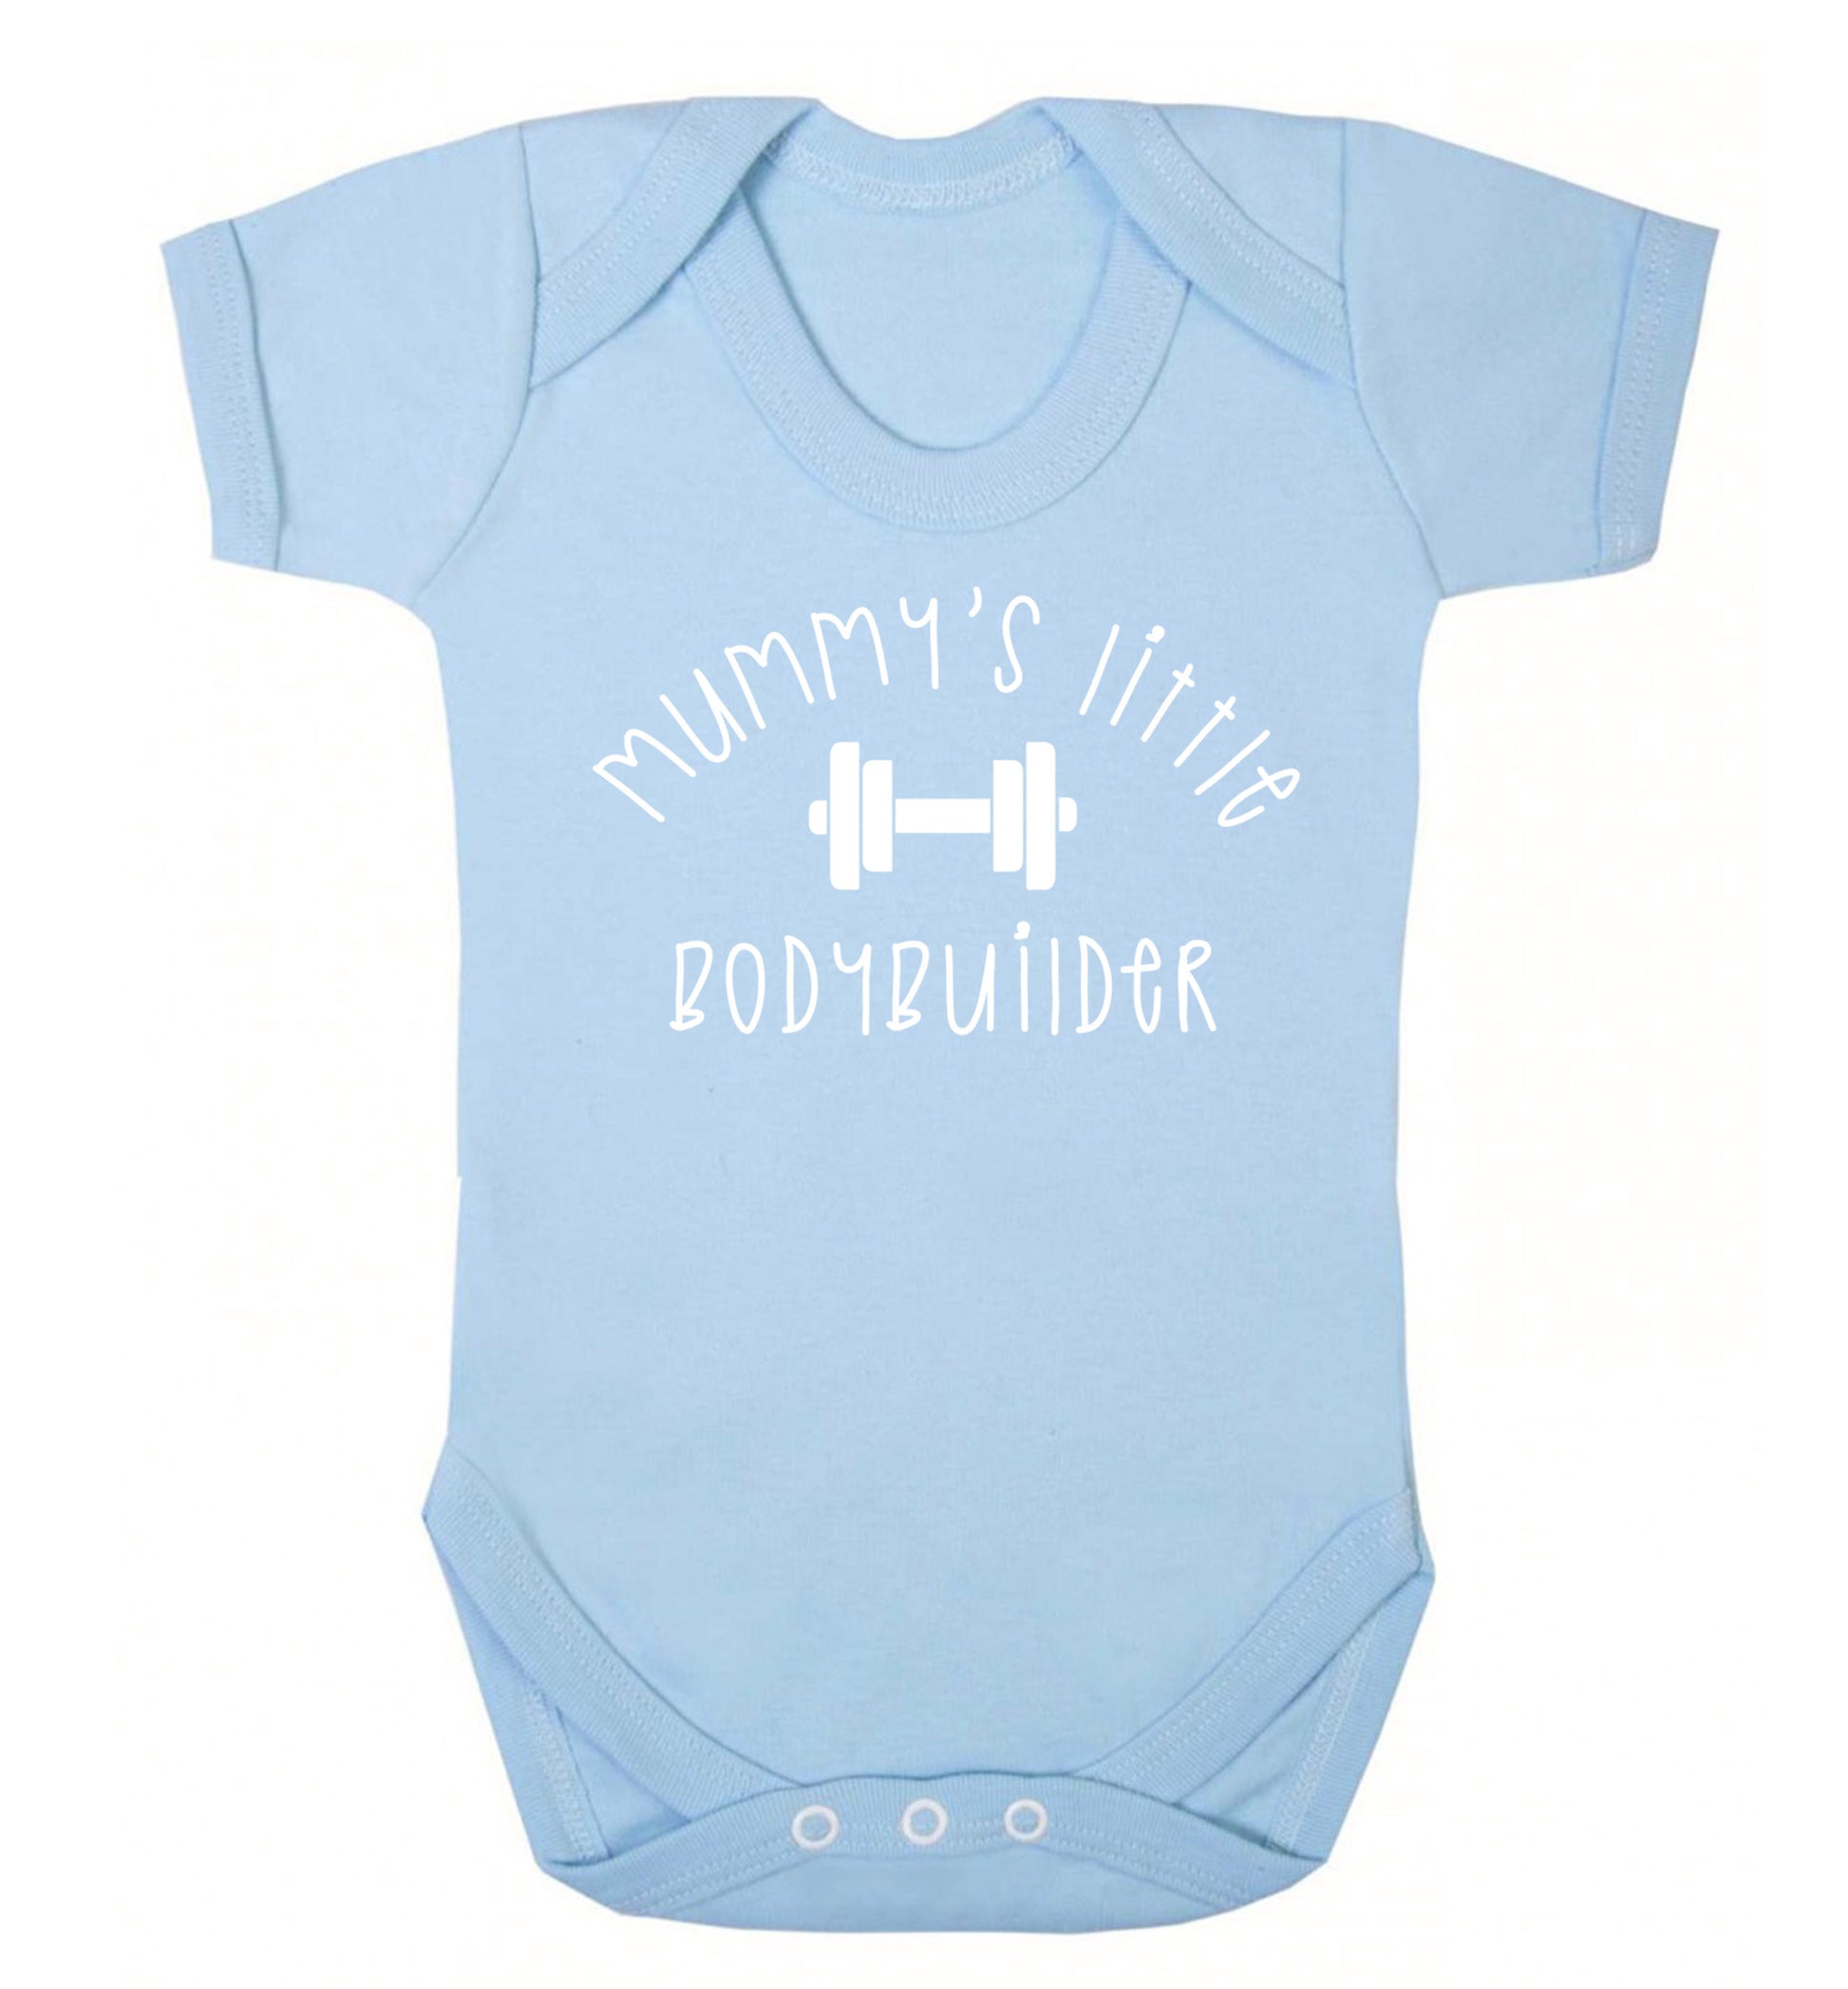 Mummy's little bodybuilder Baby Vest pale blue 18-24 months